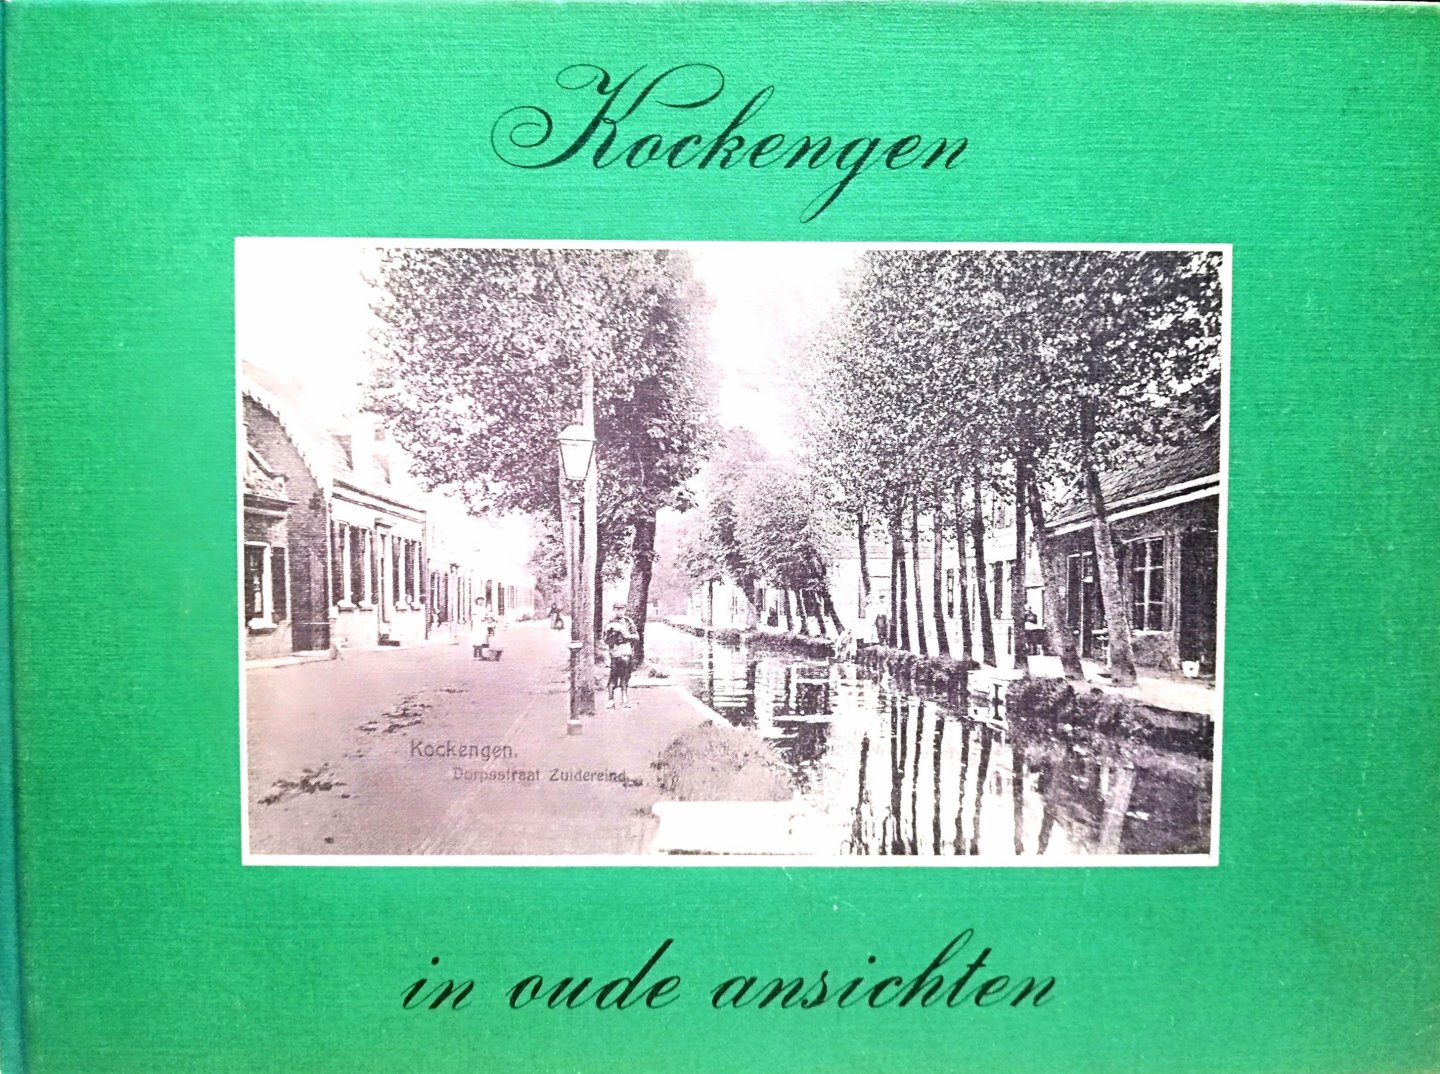 Sondij , P . [ ISBN  ] 1419 - Kockengen in Oude Ansichten . ( Prentbriefkaarten en foto's van Kockengen uit de periode 1880 - 1930 . Hoe het hun woonplaats er vroeger uitzag , kaarten en foto's voorzien van korte begeleidende tekst. ) Extra bijgevoegd -